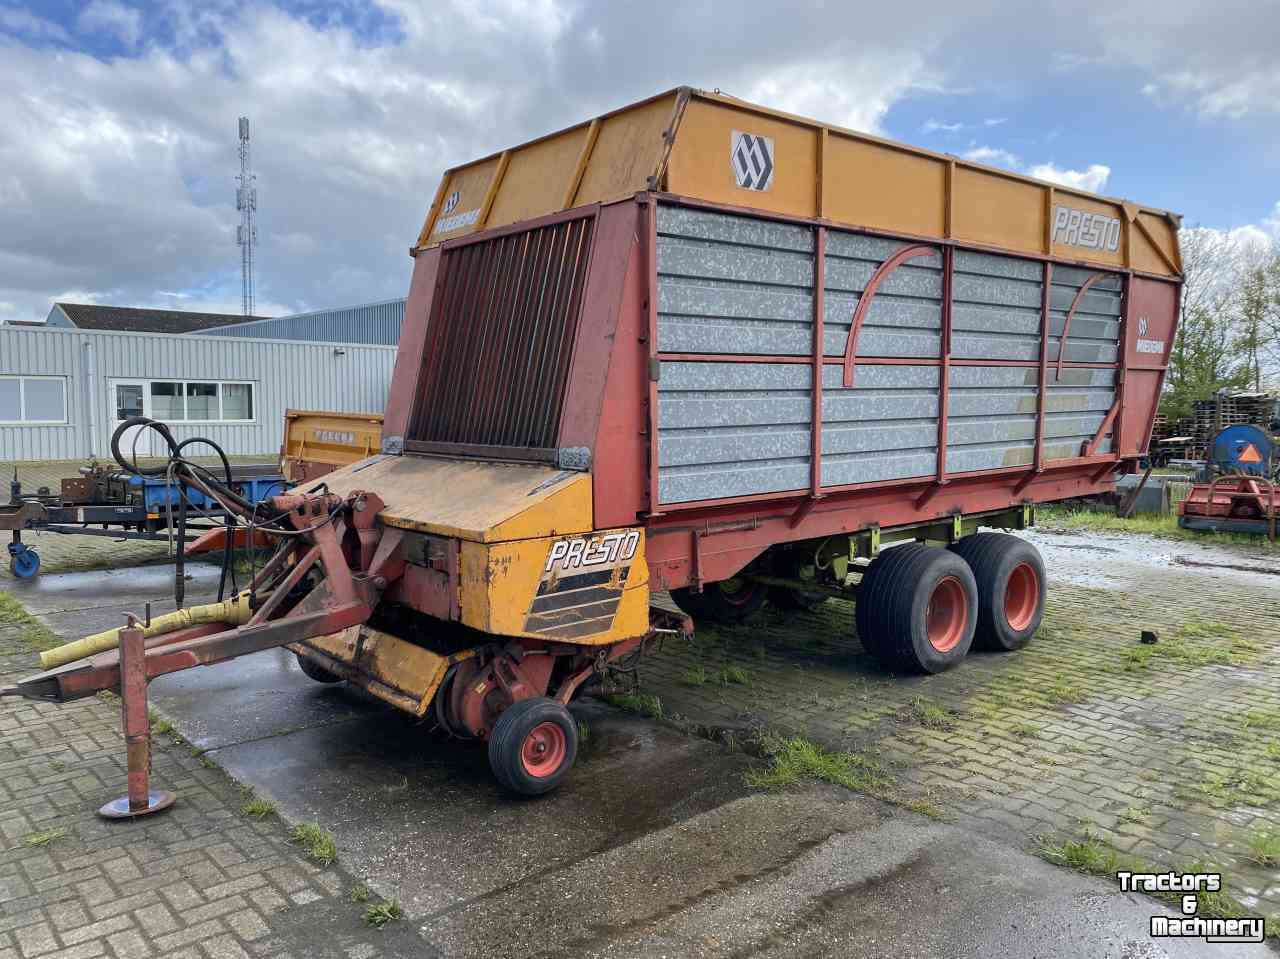 Self-loading wagon Miedema Presto